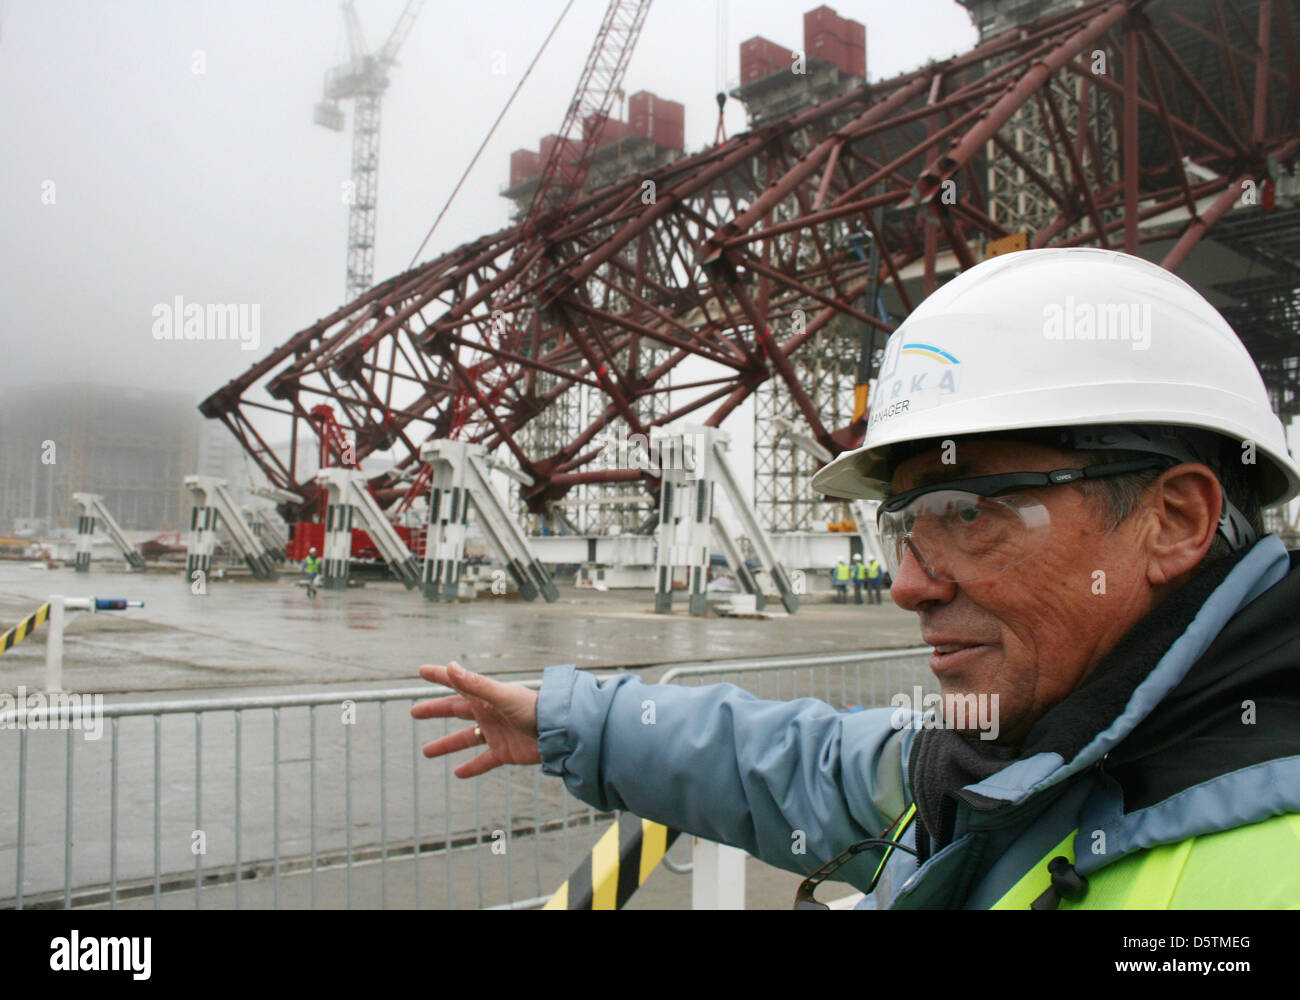 English chef de la sécurité de l'emplacement dans la construction du Tchernobyl, David Jackson, explique le confinement de la construction du nouveau la strcuture pour le réacteur nucléaire (L dans le brouillard) à Tchernobyl, en Ukraine, le 27 novembre 2012. La catastrophe de Tchernobyl a eu lieu en 1986, la nouvelle structure de confinement est prévu d'être mis en place à la fin de 2015. Photo : Wolfgang JUNG Banque D'Images